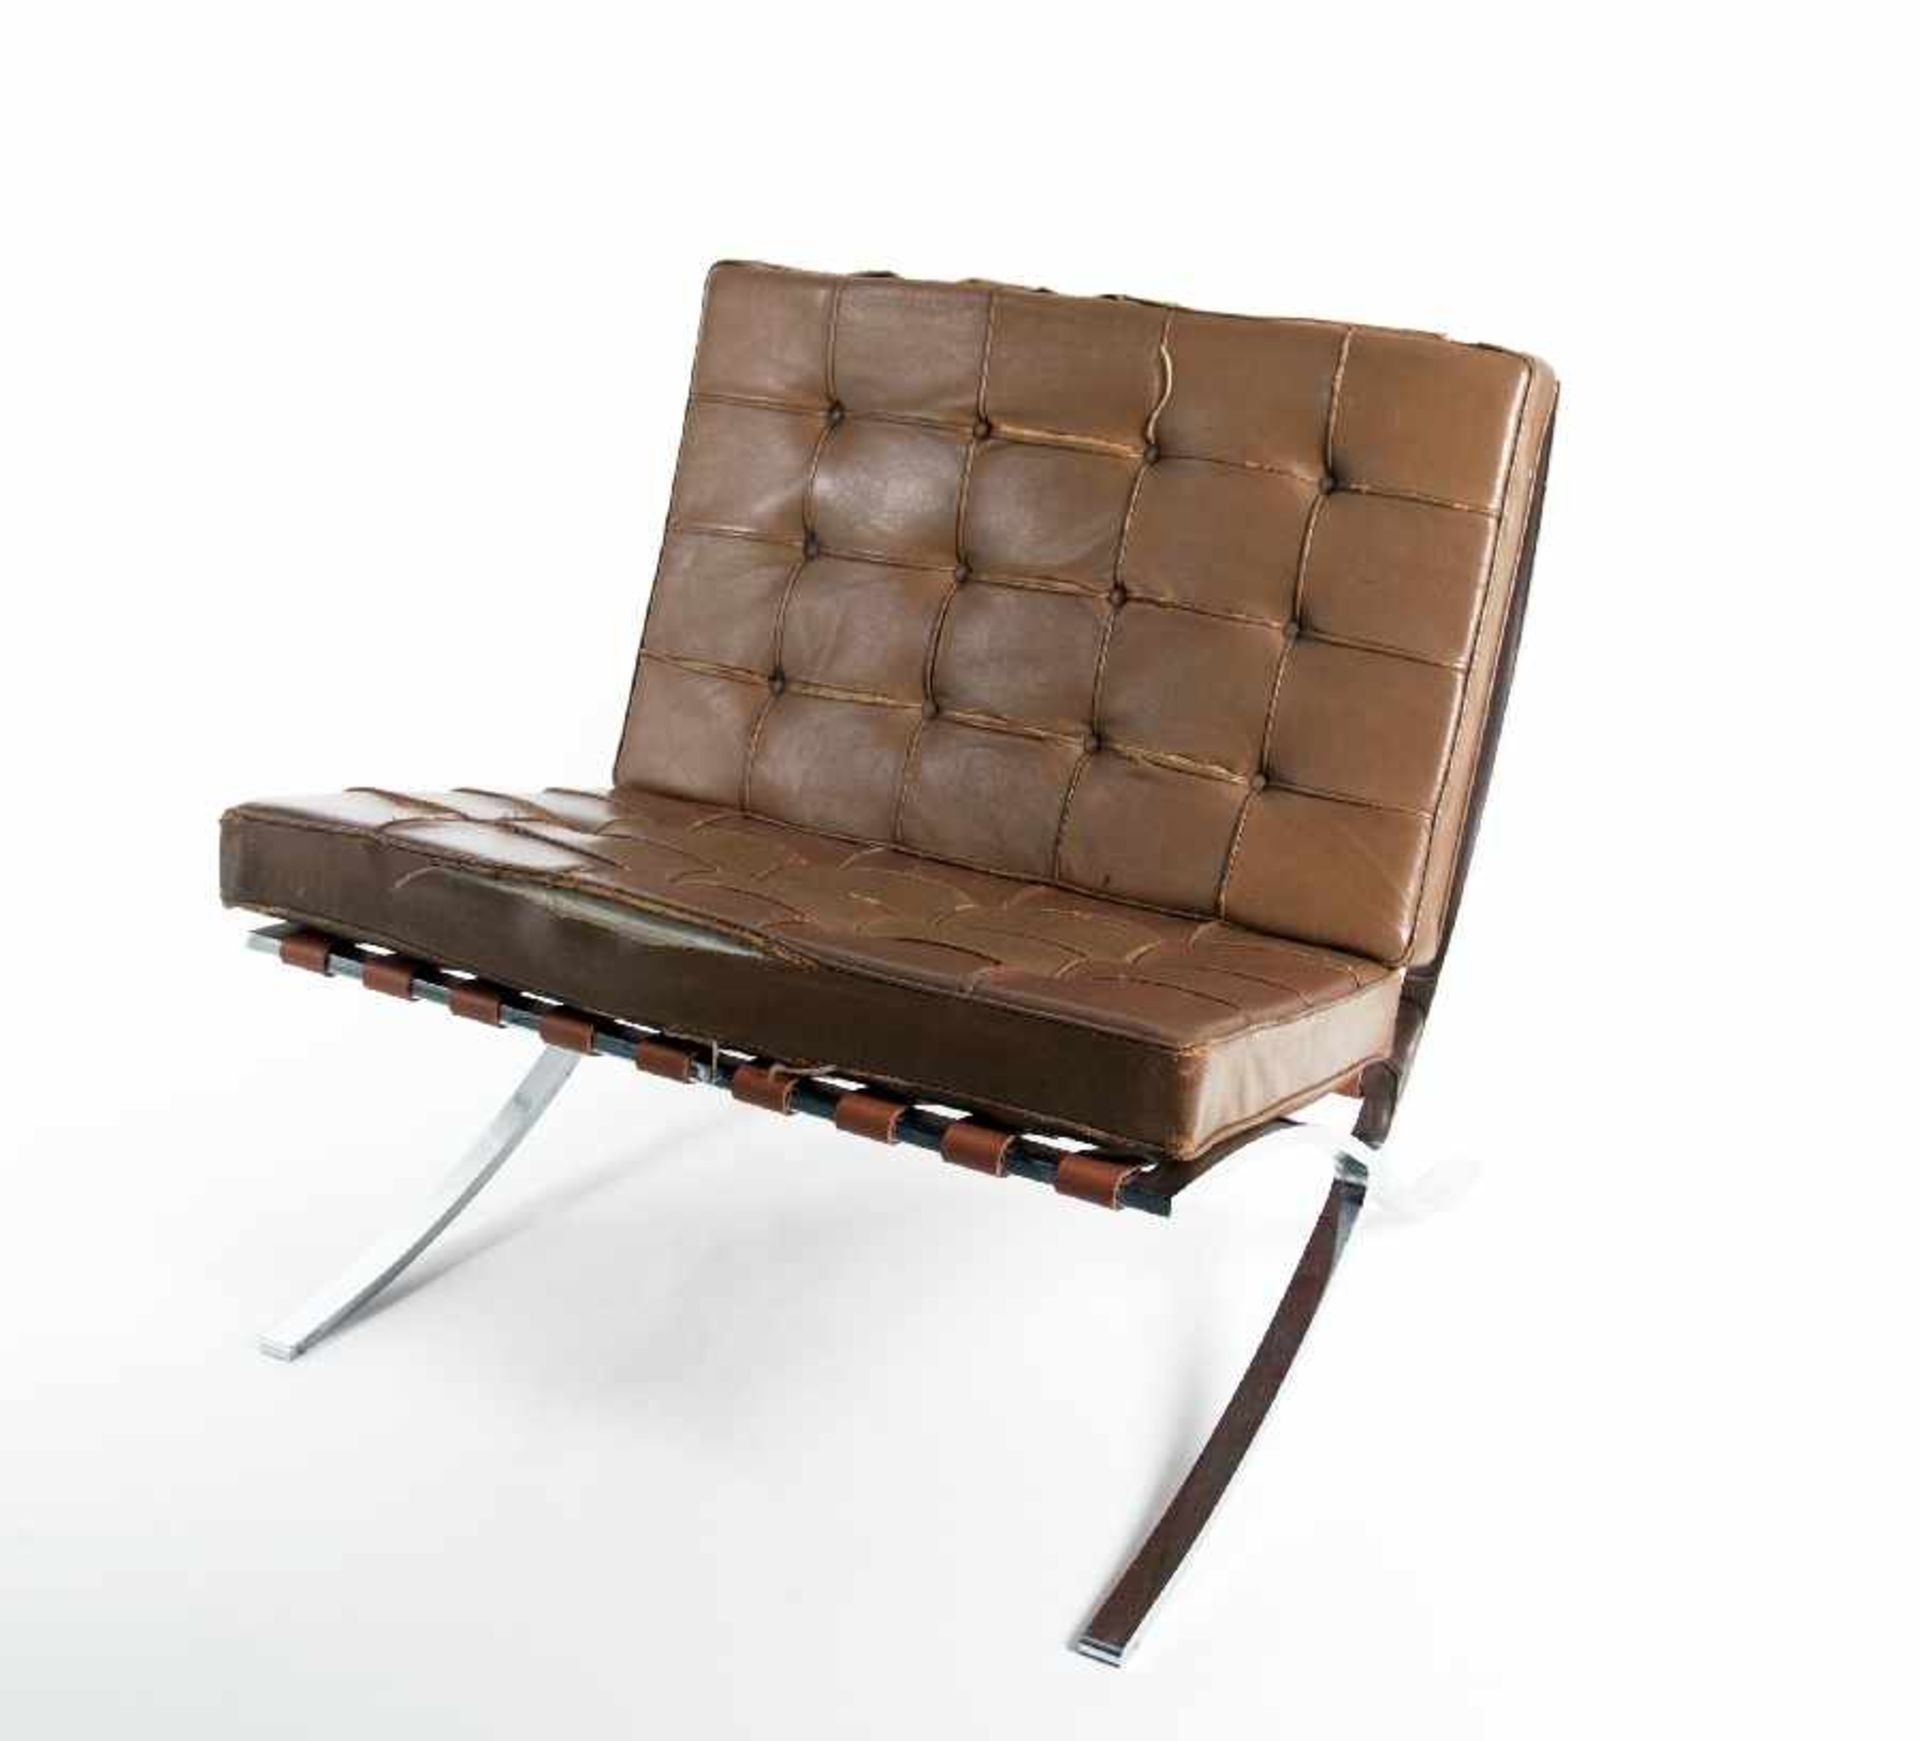 Mies van der Rohe1886 Aachen - 1969 ChicagoBarcelona ChairStahl und Lederriemen; H 75 cm, B 75 cm, T